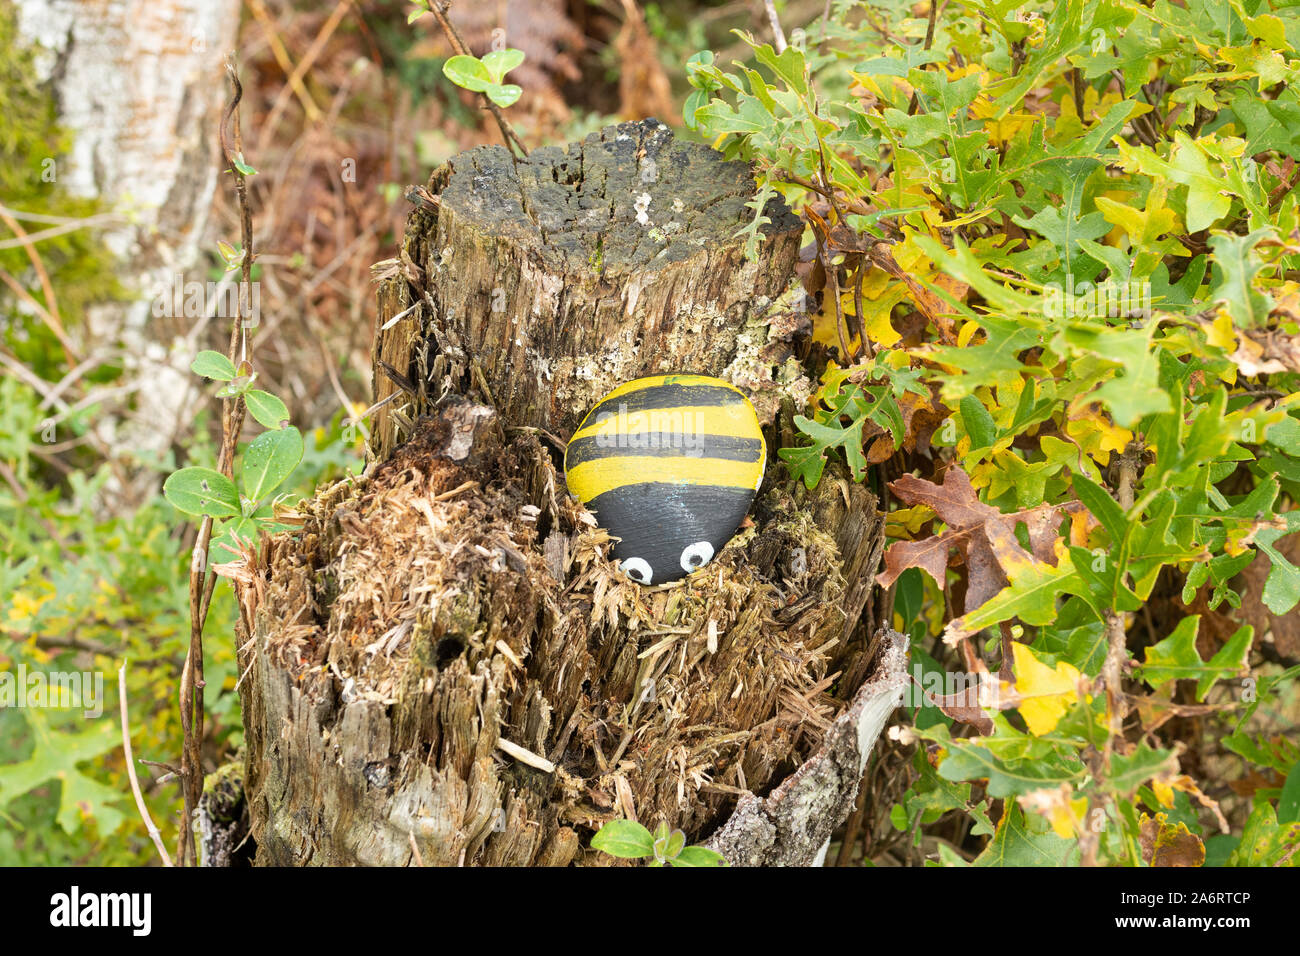 Galets peints avec une abeille avec des rayures jaunes et noires à gauche sur une souche d'arbre dans la campagne, au Royaume-Uni. Rock peint craze ou tendance. Banque D'Images